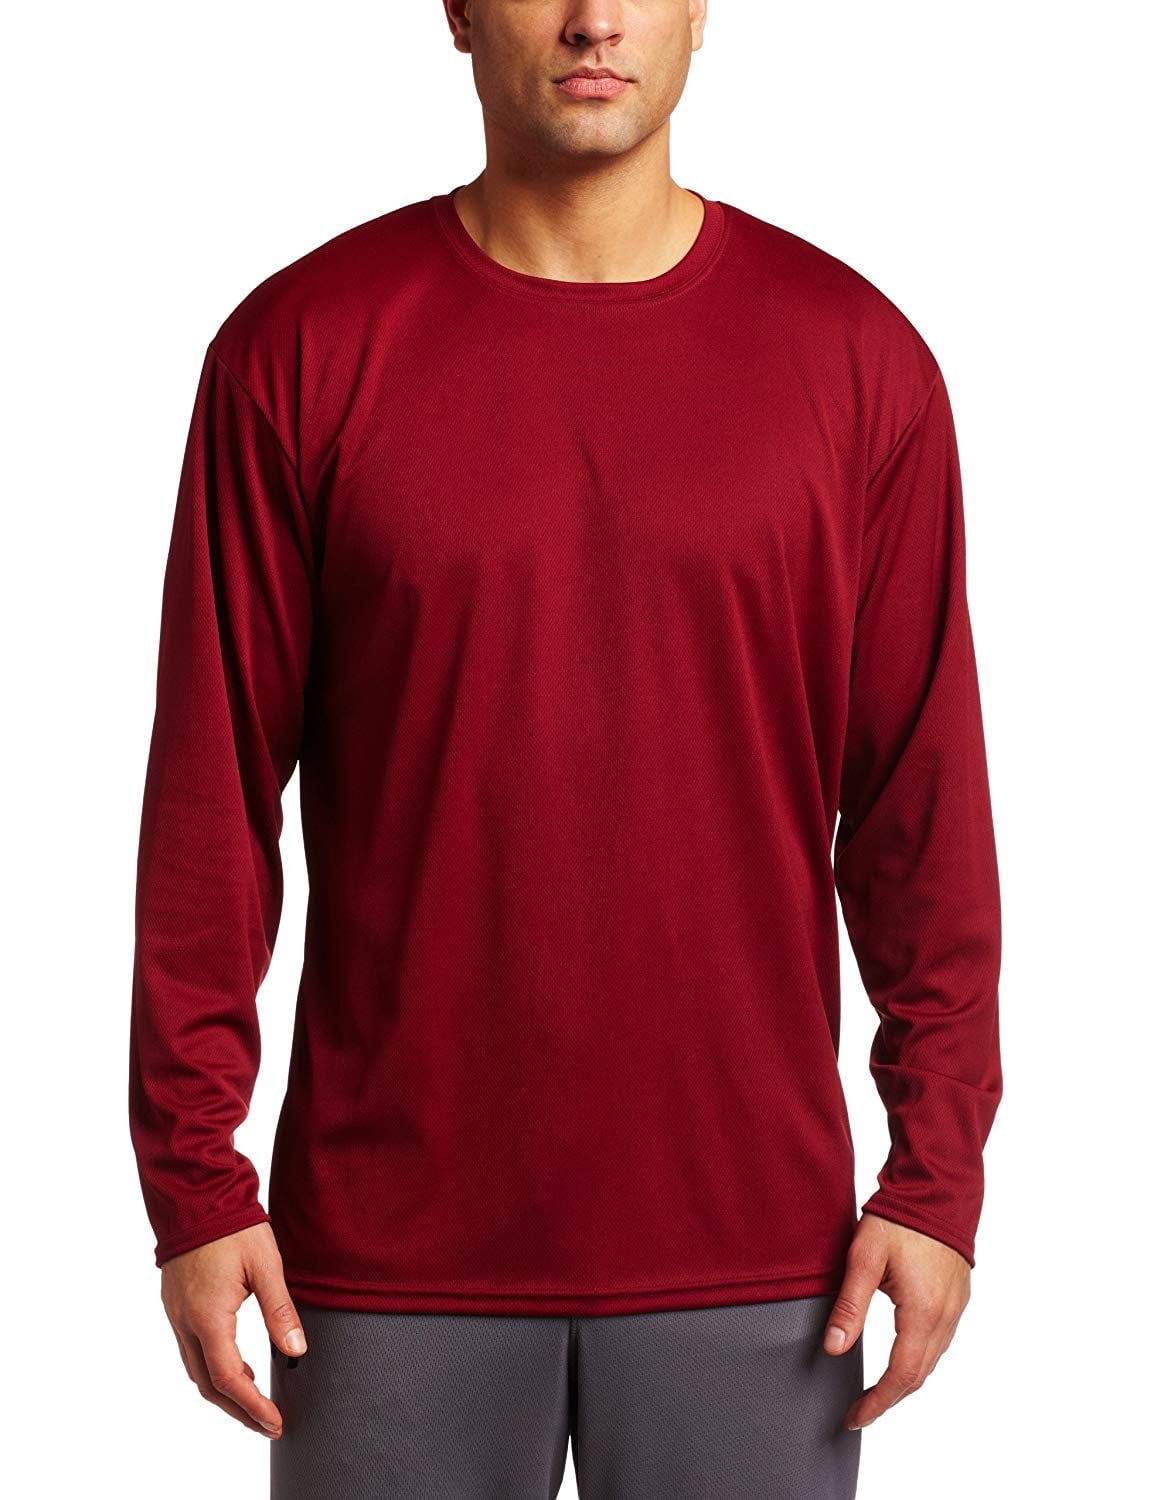 ASICS Men's Circuit 7 Warm-Up Long Sleeve Shirt (Cardinal, Medium ...